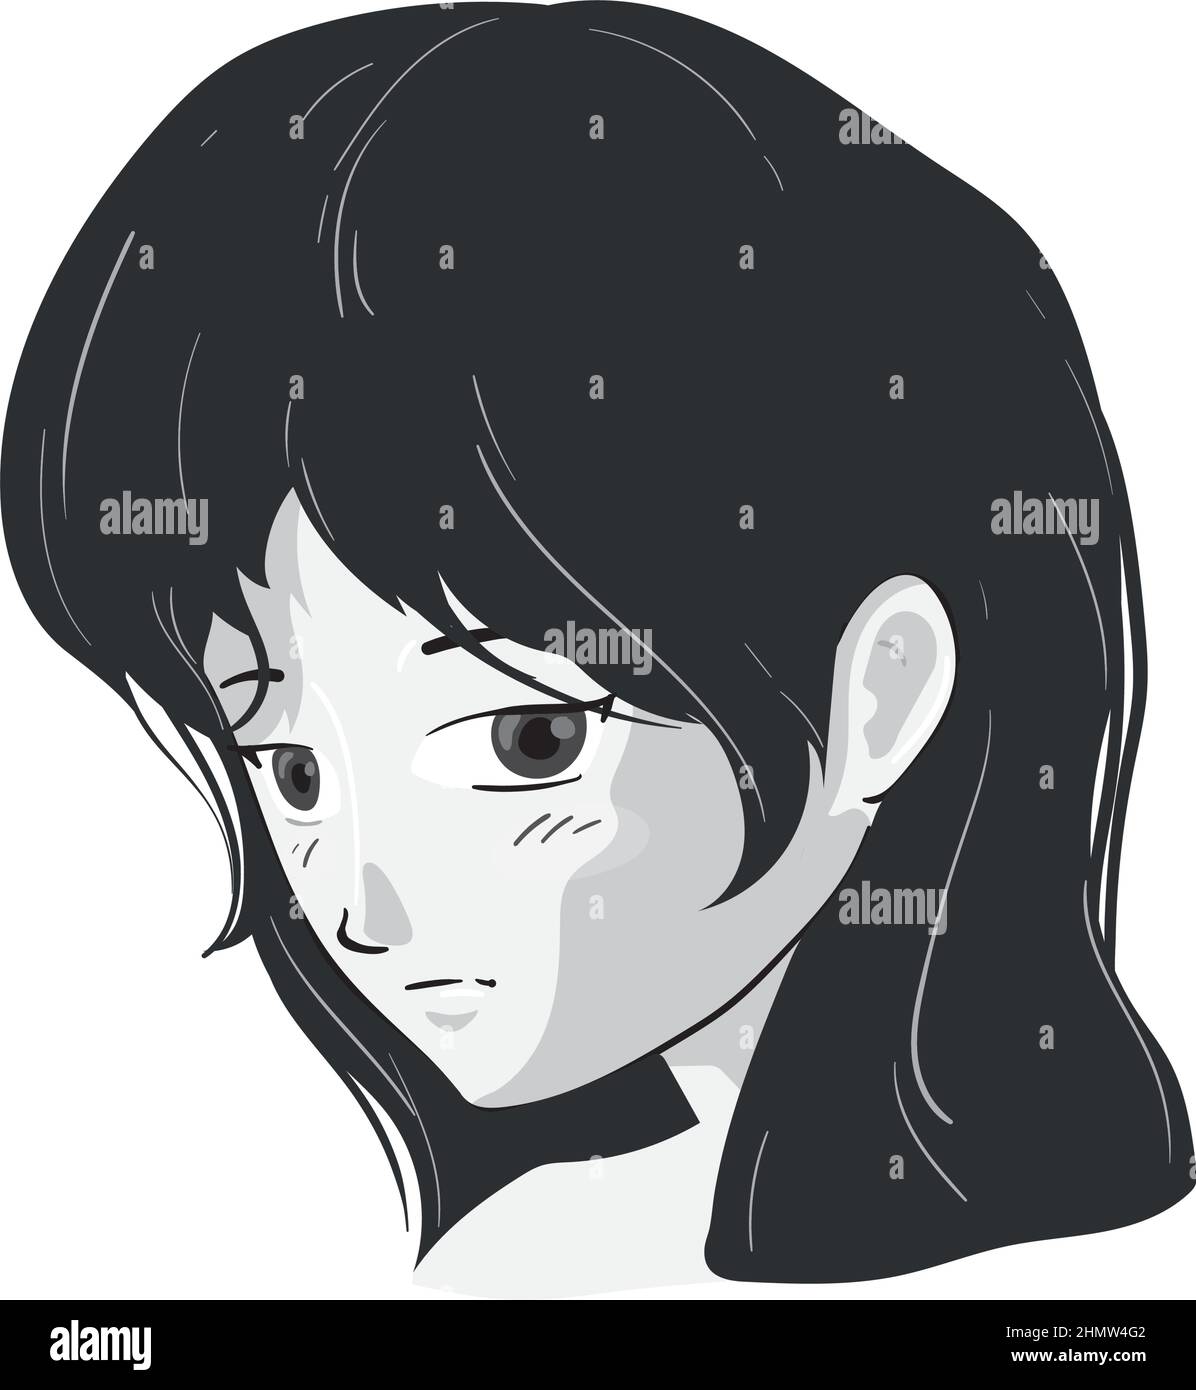 Vetor de Emotion anime icon sad in simple black design do Stock